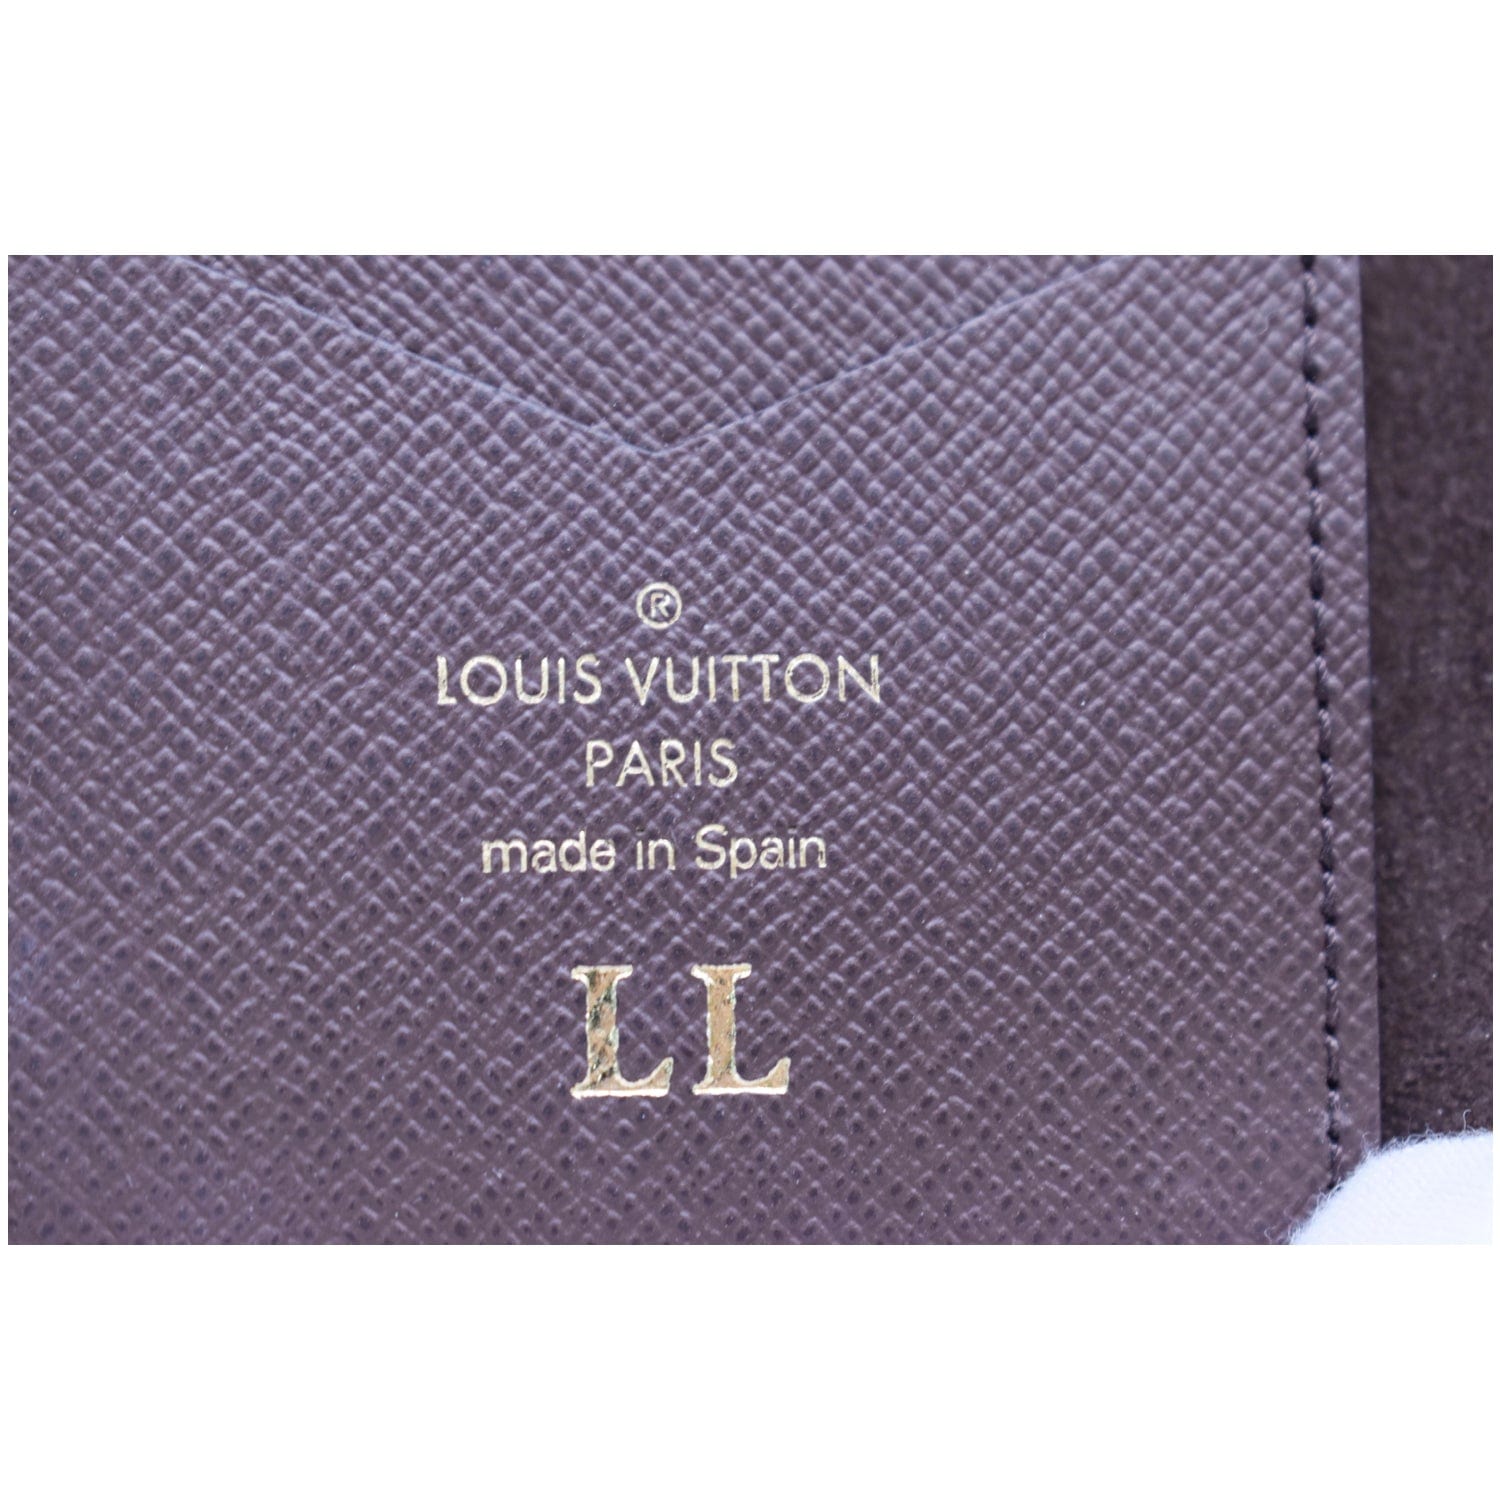 LOUIS VUITTON IPhone X Folio Monogram Canvas Phone Case-US